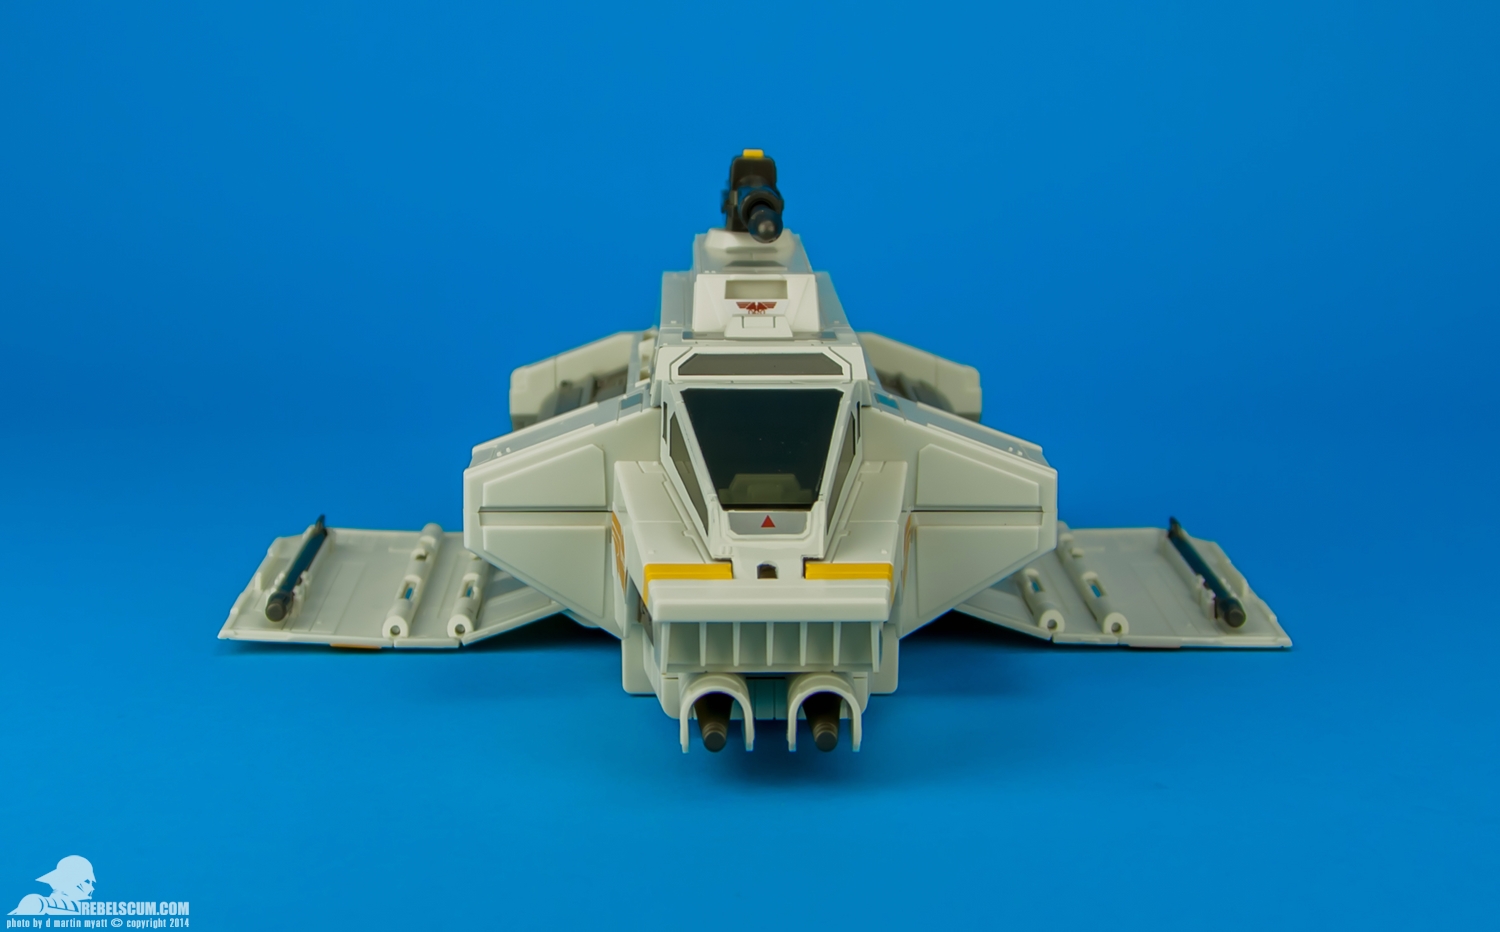 Rebels-Vehicles-series-1-The-Phantom-Attack-Shuttle-005.jpg